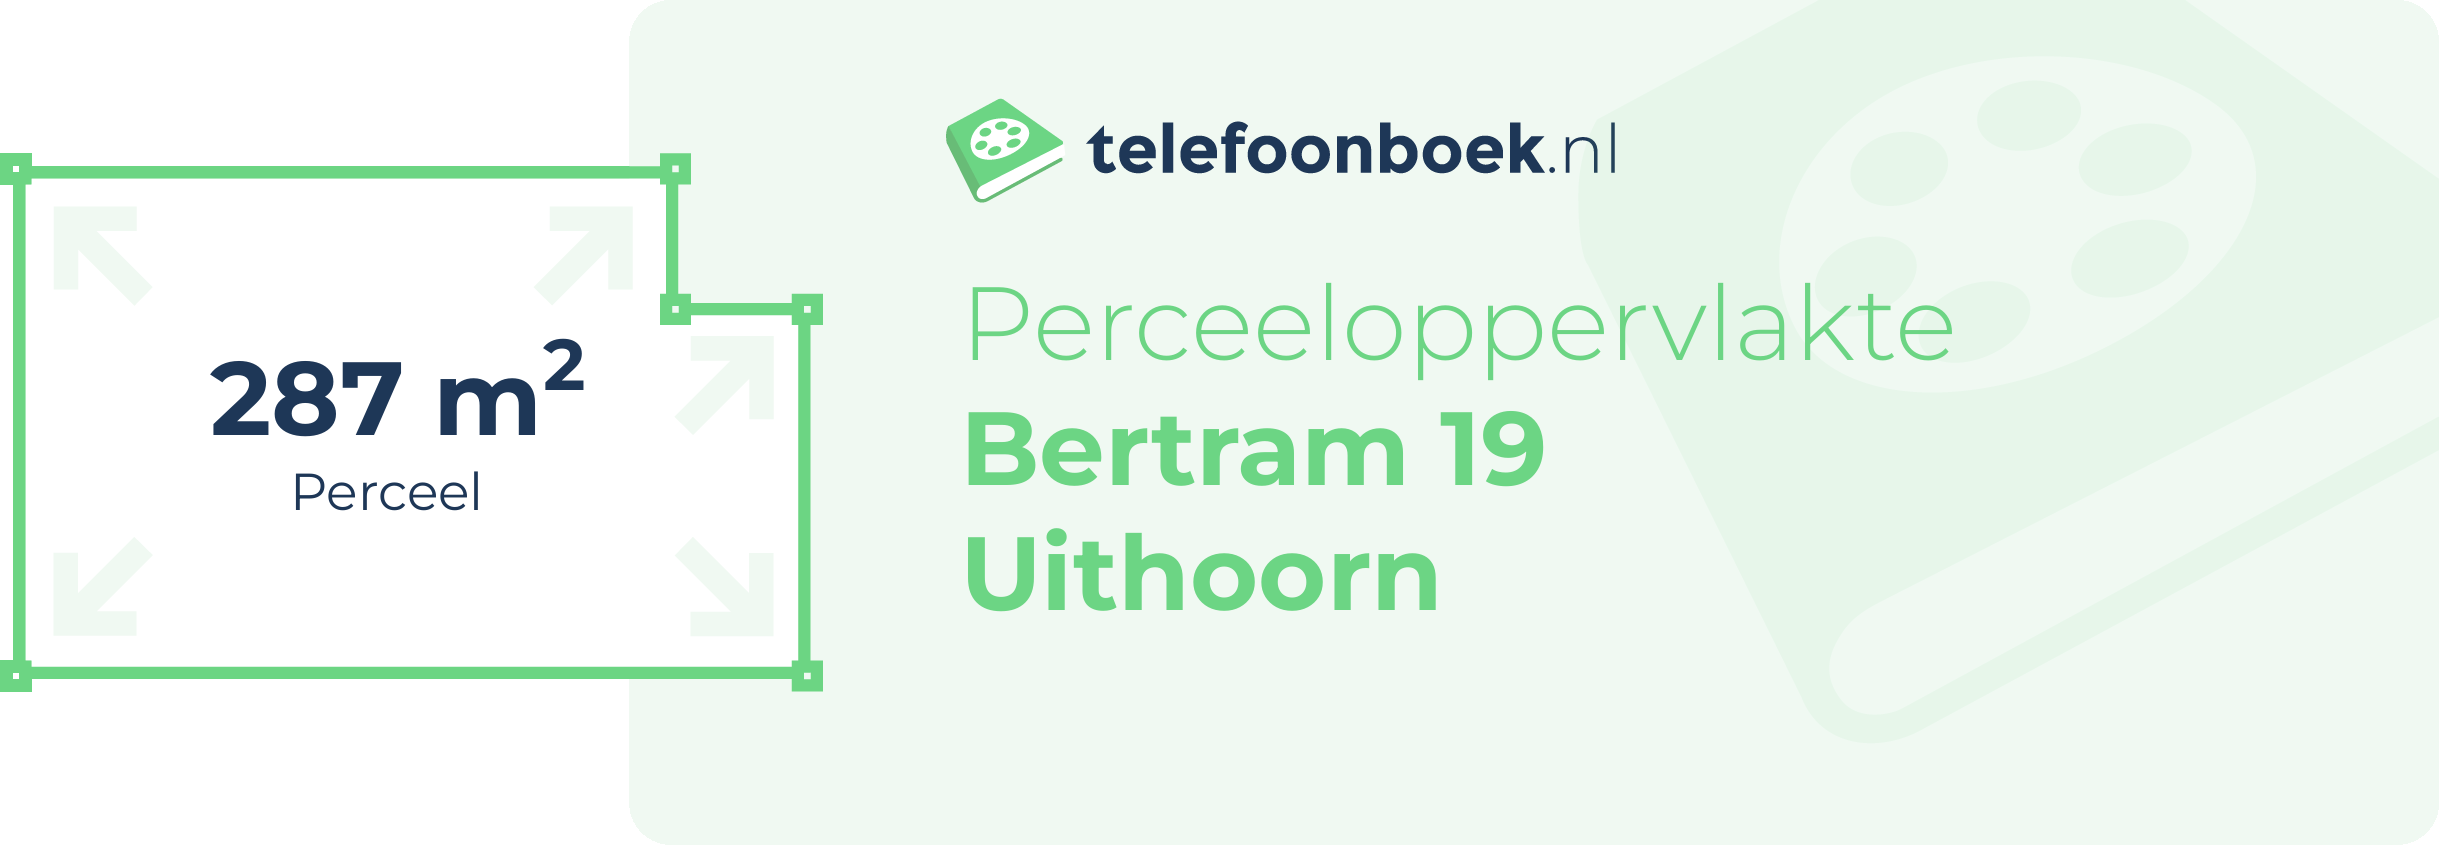 Perceeloppervlakte Bertram 19 Uithoorn